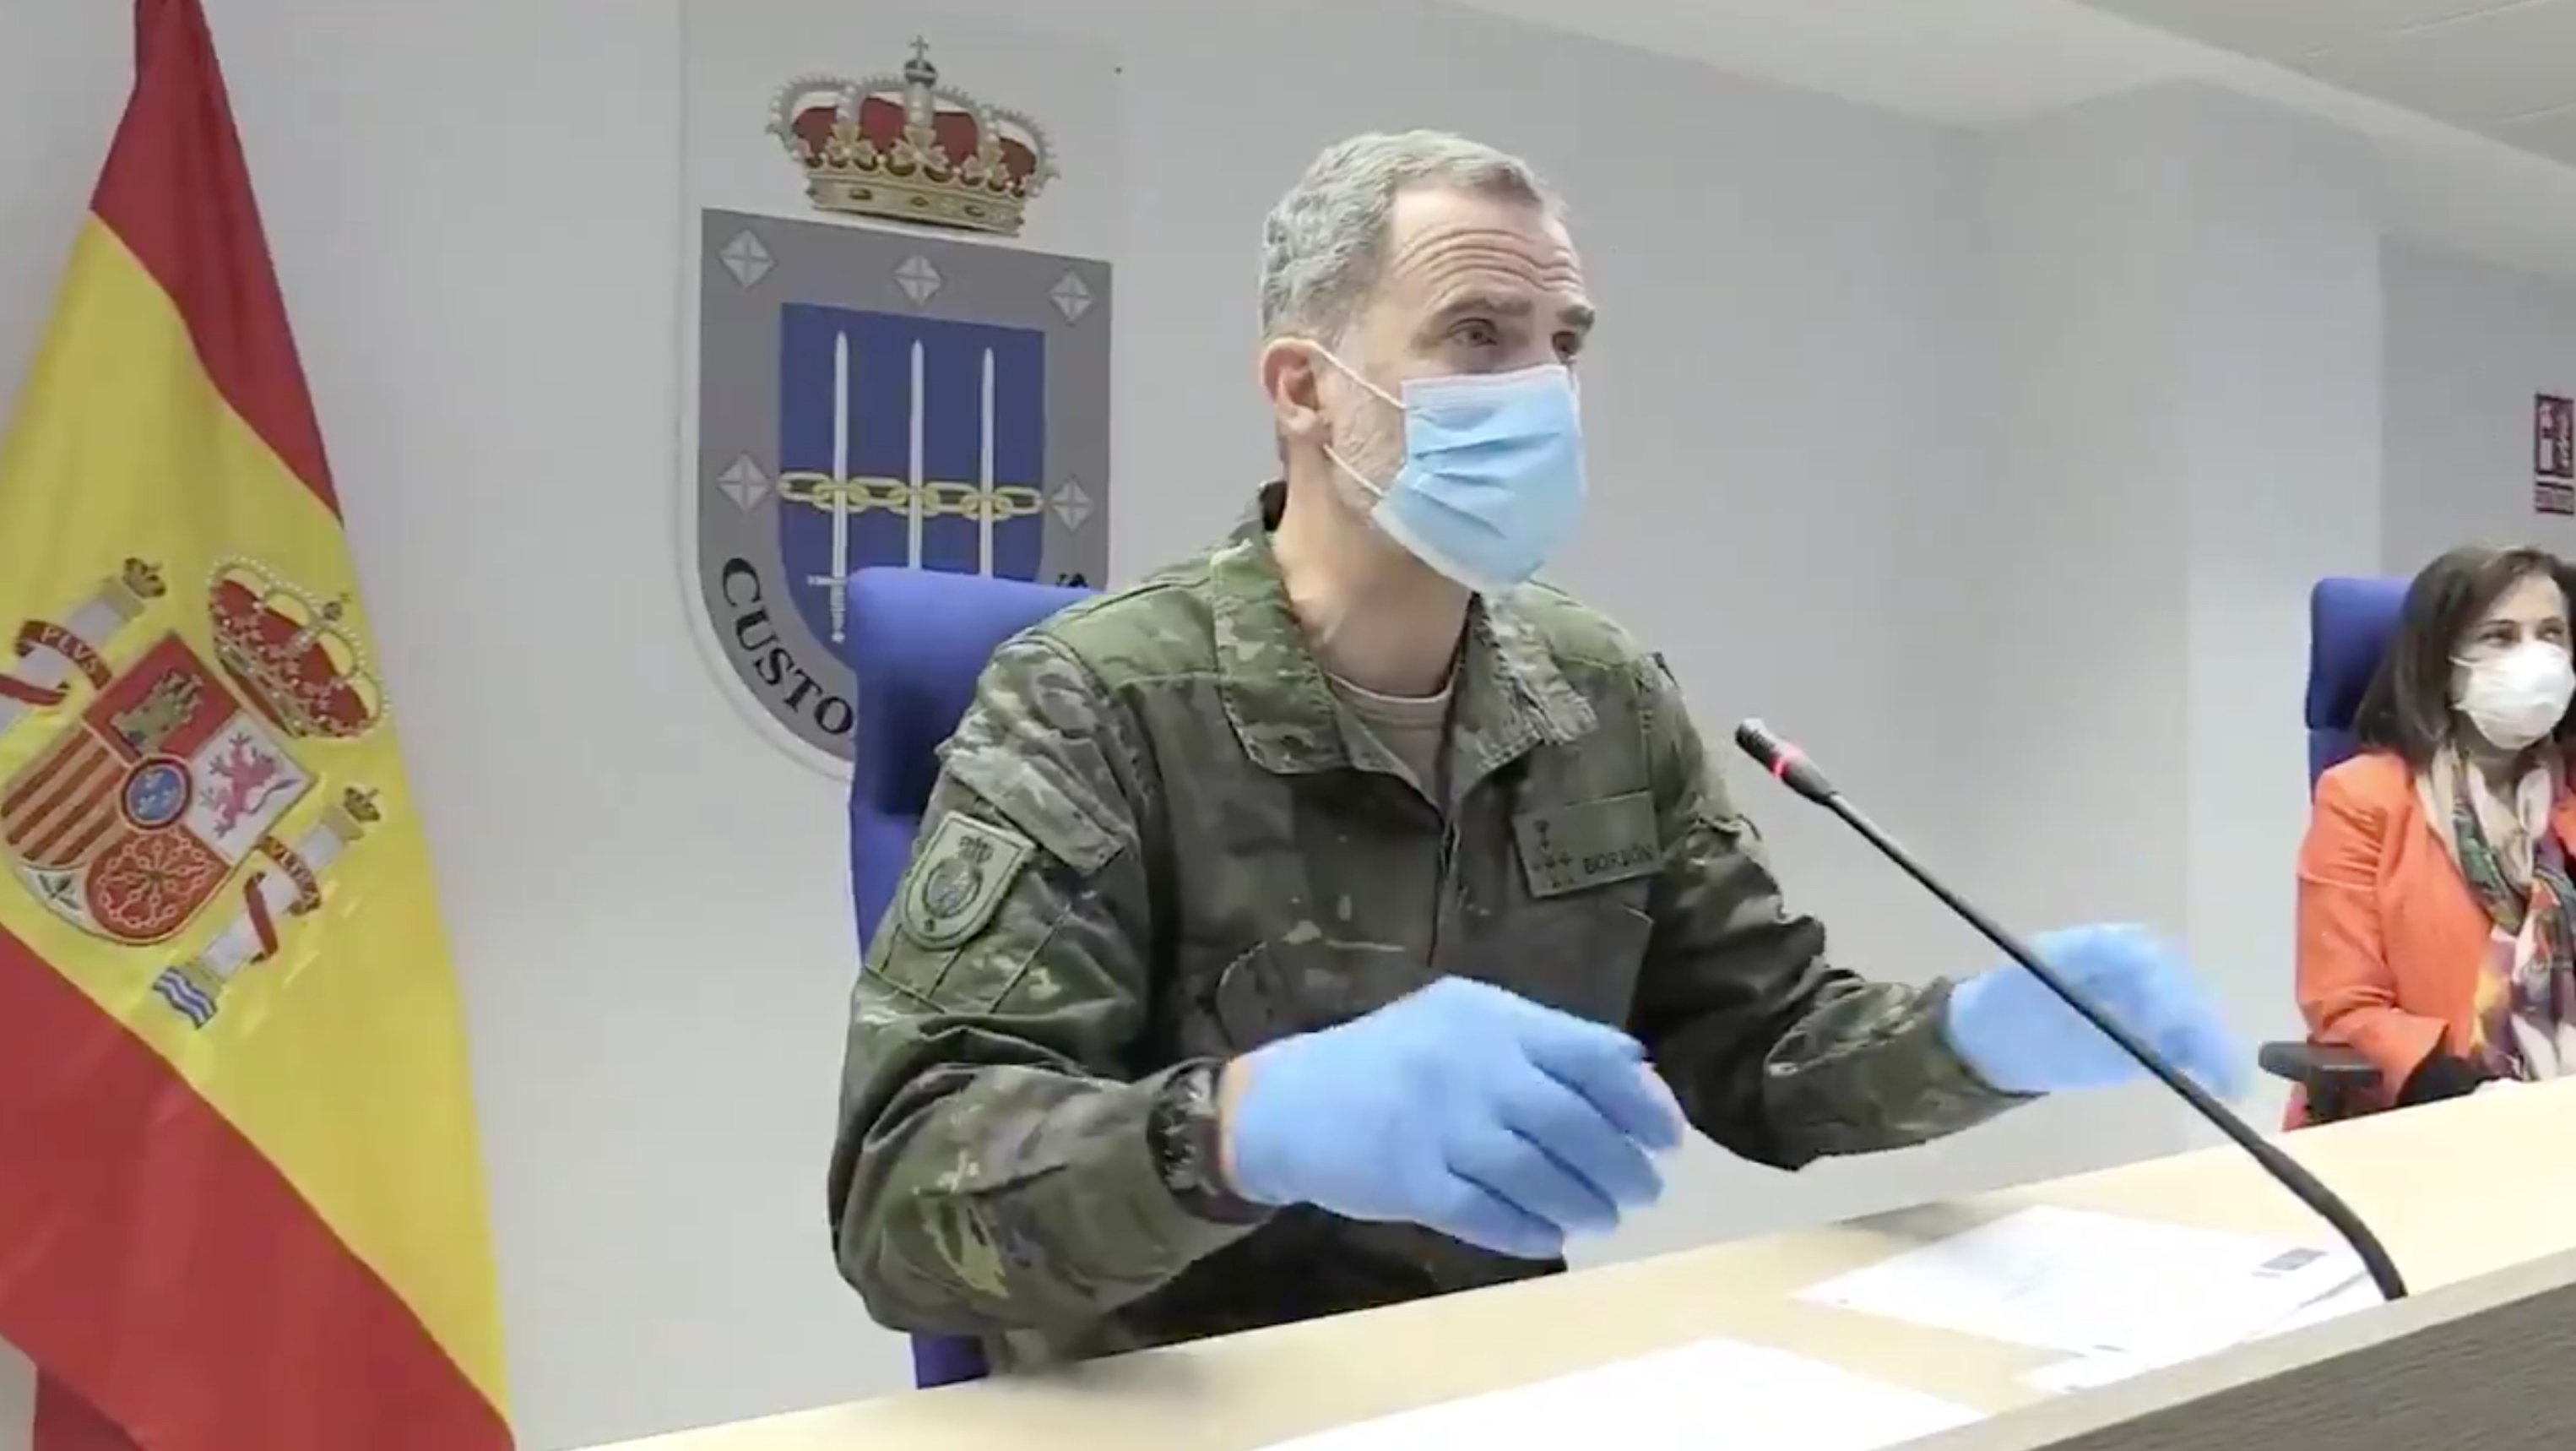 Ridículo 'recluta' Felipe, disfrazado a la guerra del coronavirus: "Salvados"